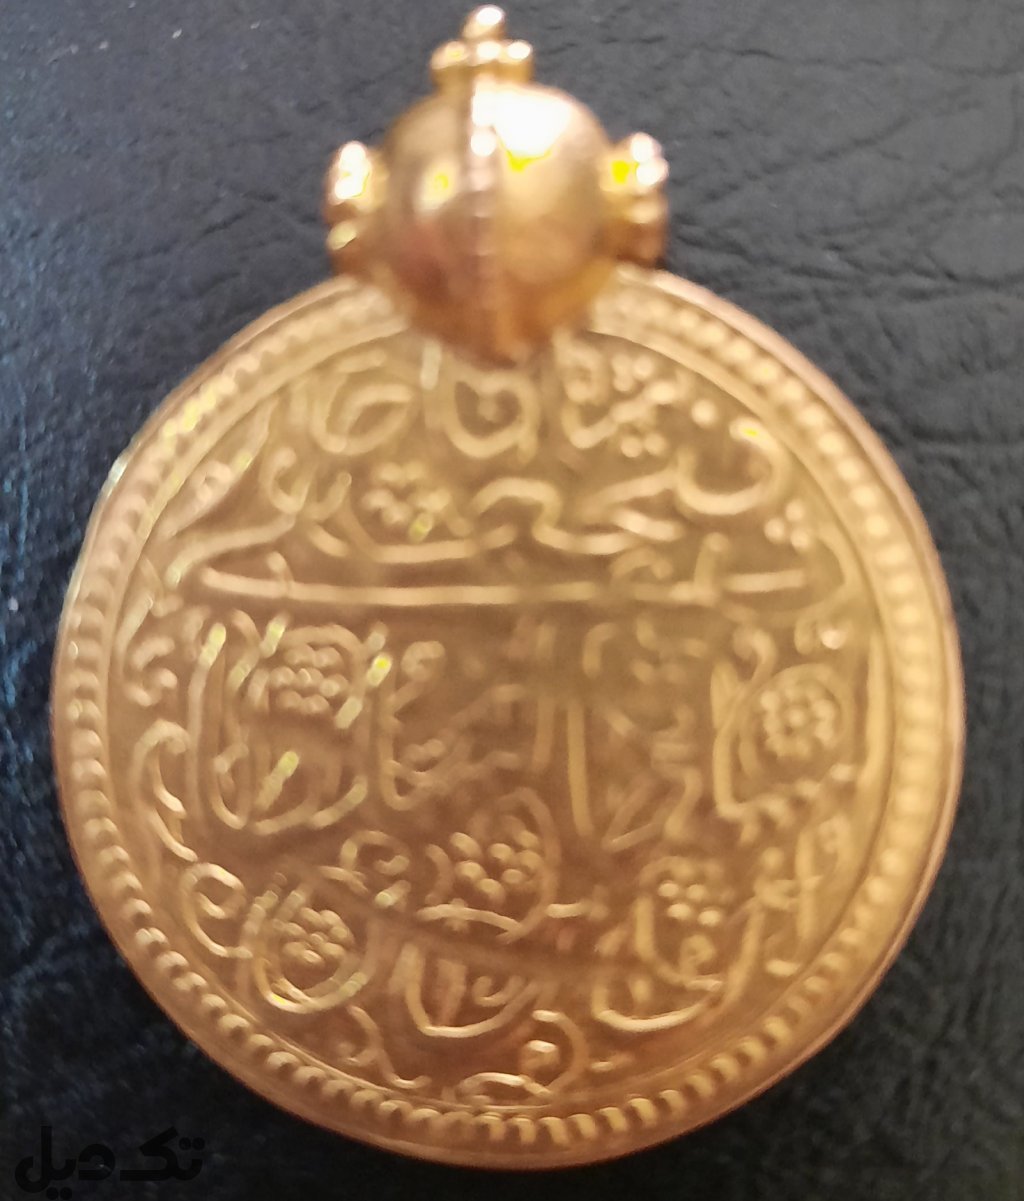 سکه اشرفی قاجاری قدیمی